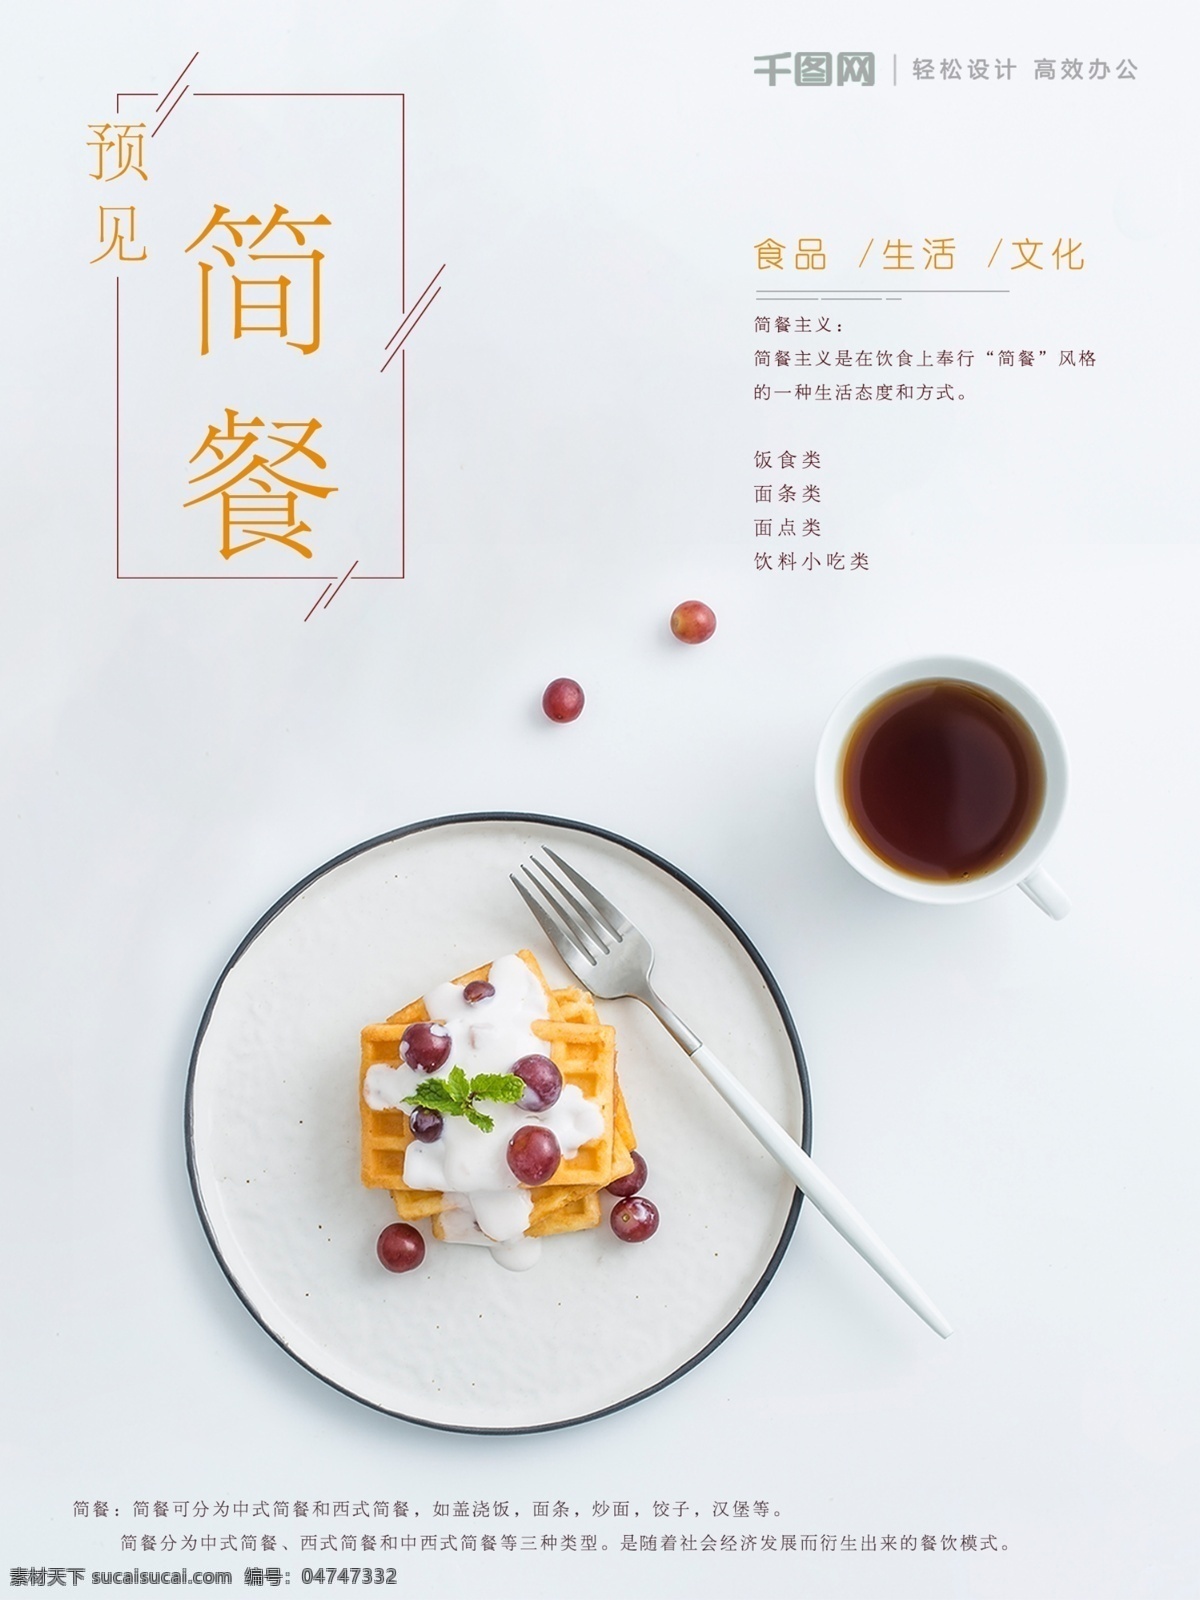 美食 简 餐 美食海报 食品 文化 美食海报设计 简餐 简餐海报设计 遇见简餐 生活海报 美食文化